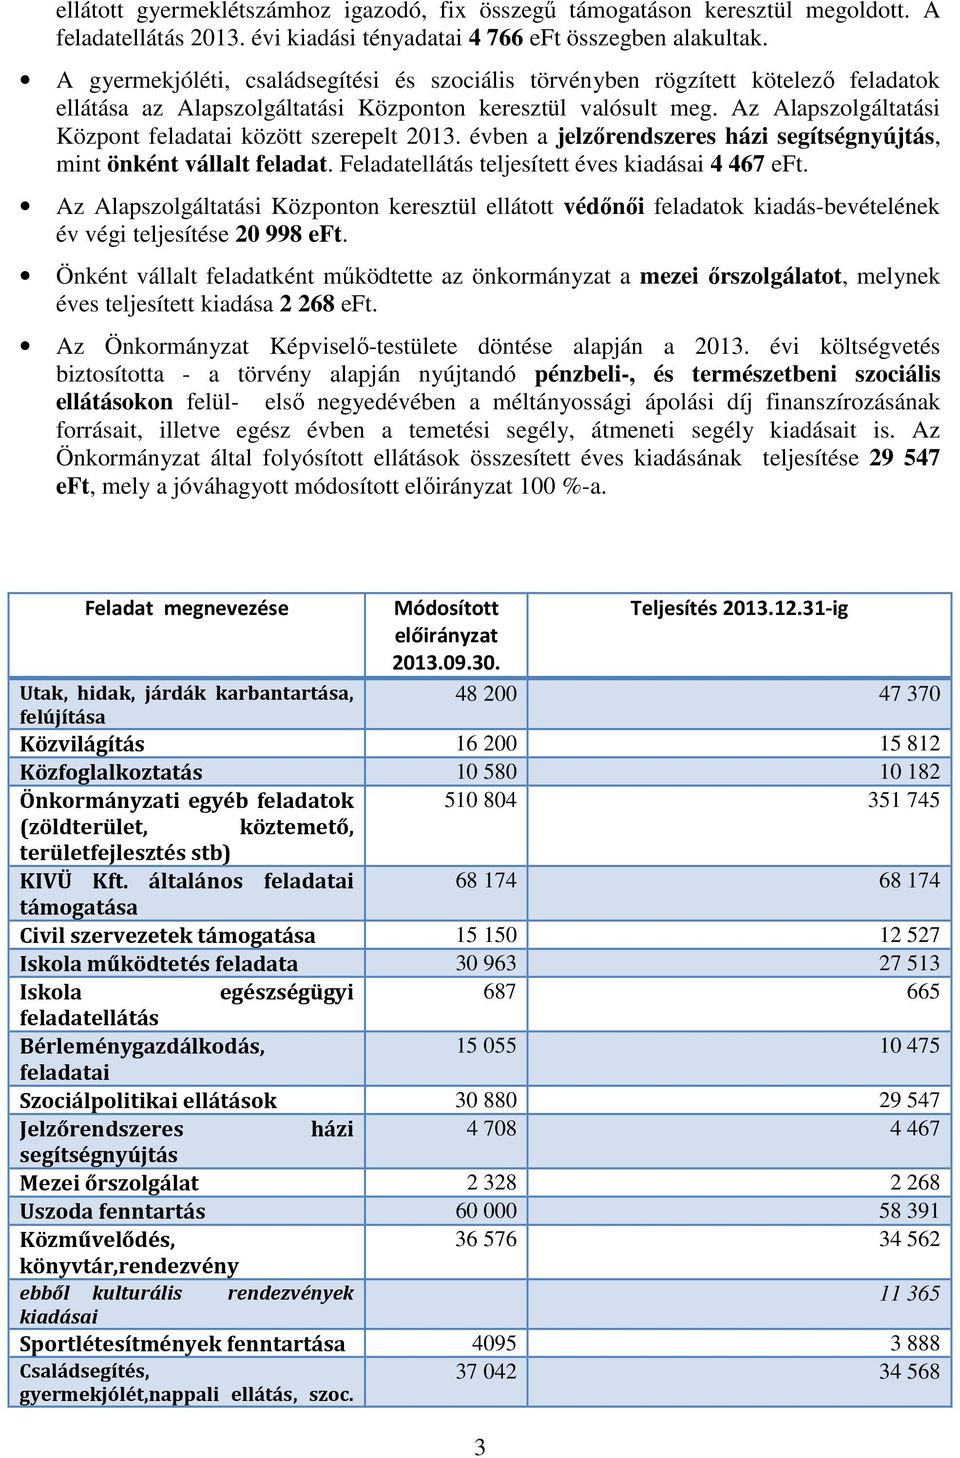 Az Alapszolgáltatási Központ feladatai között szerepelt 2013. évben a jelzőrendszeres házi segítségnyújtás, mint önként vállalt feladat. Feladatellátás teljesített éves kiadásai 4 467 eft.